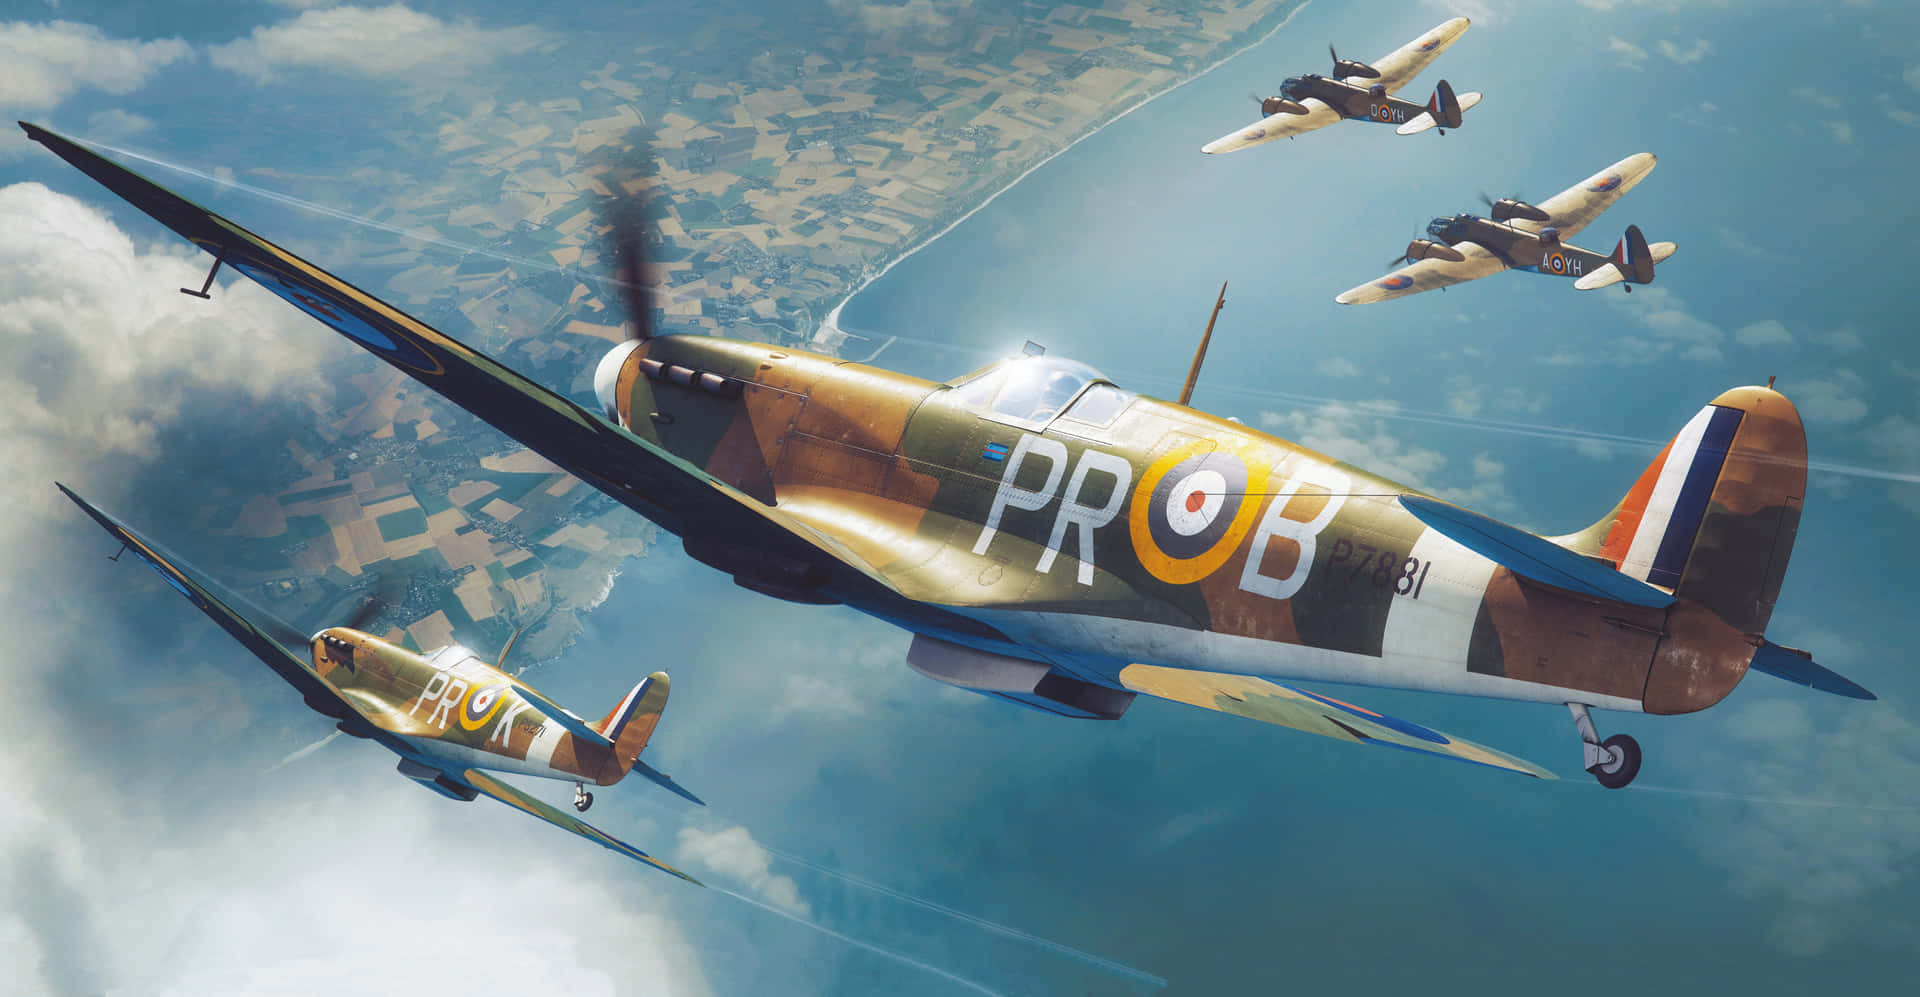 Vyav Ikoniska Brittiska Stridsflygplanet Från Andra Världskriget, Supermarine Spitfire. Wallpaper